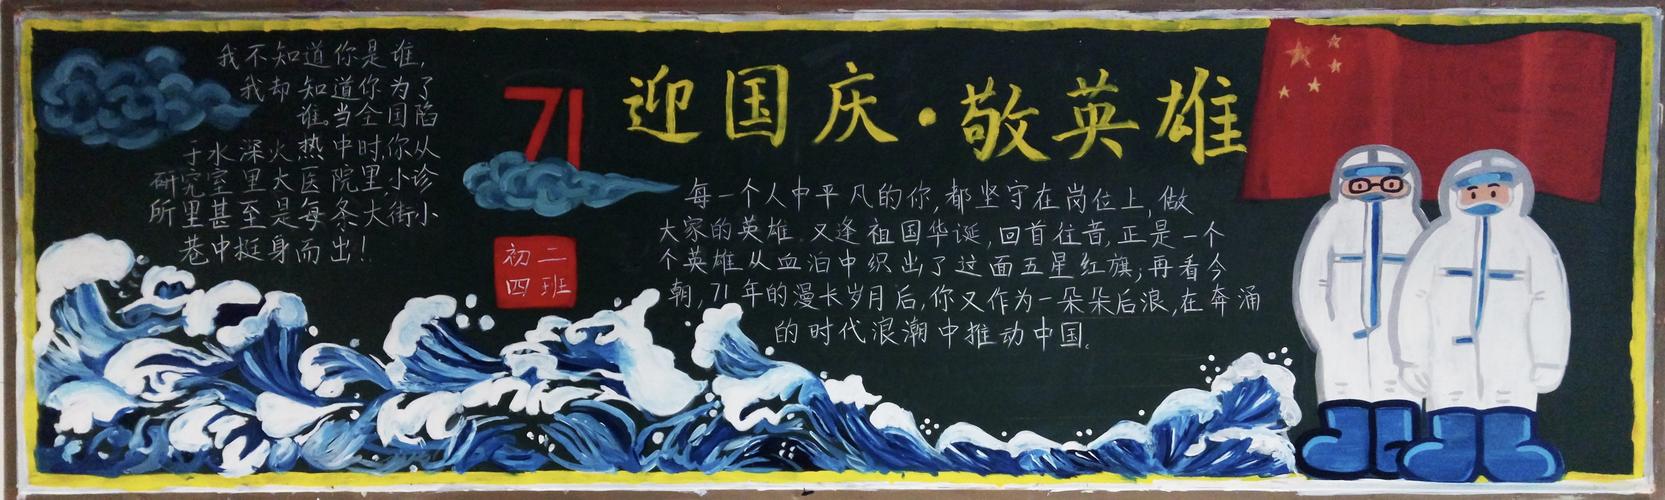 迎国庆敬英雄云附一二一校区十月优秀黑板报展示 写美篇  在庆祝新